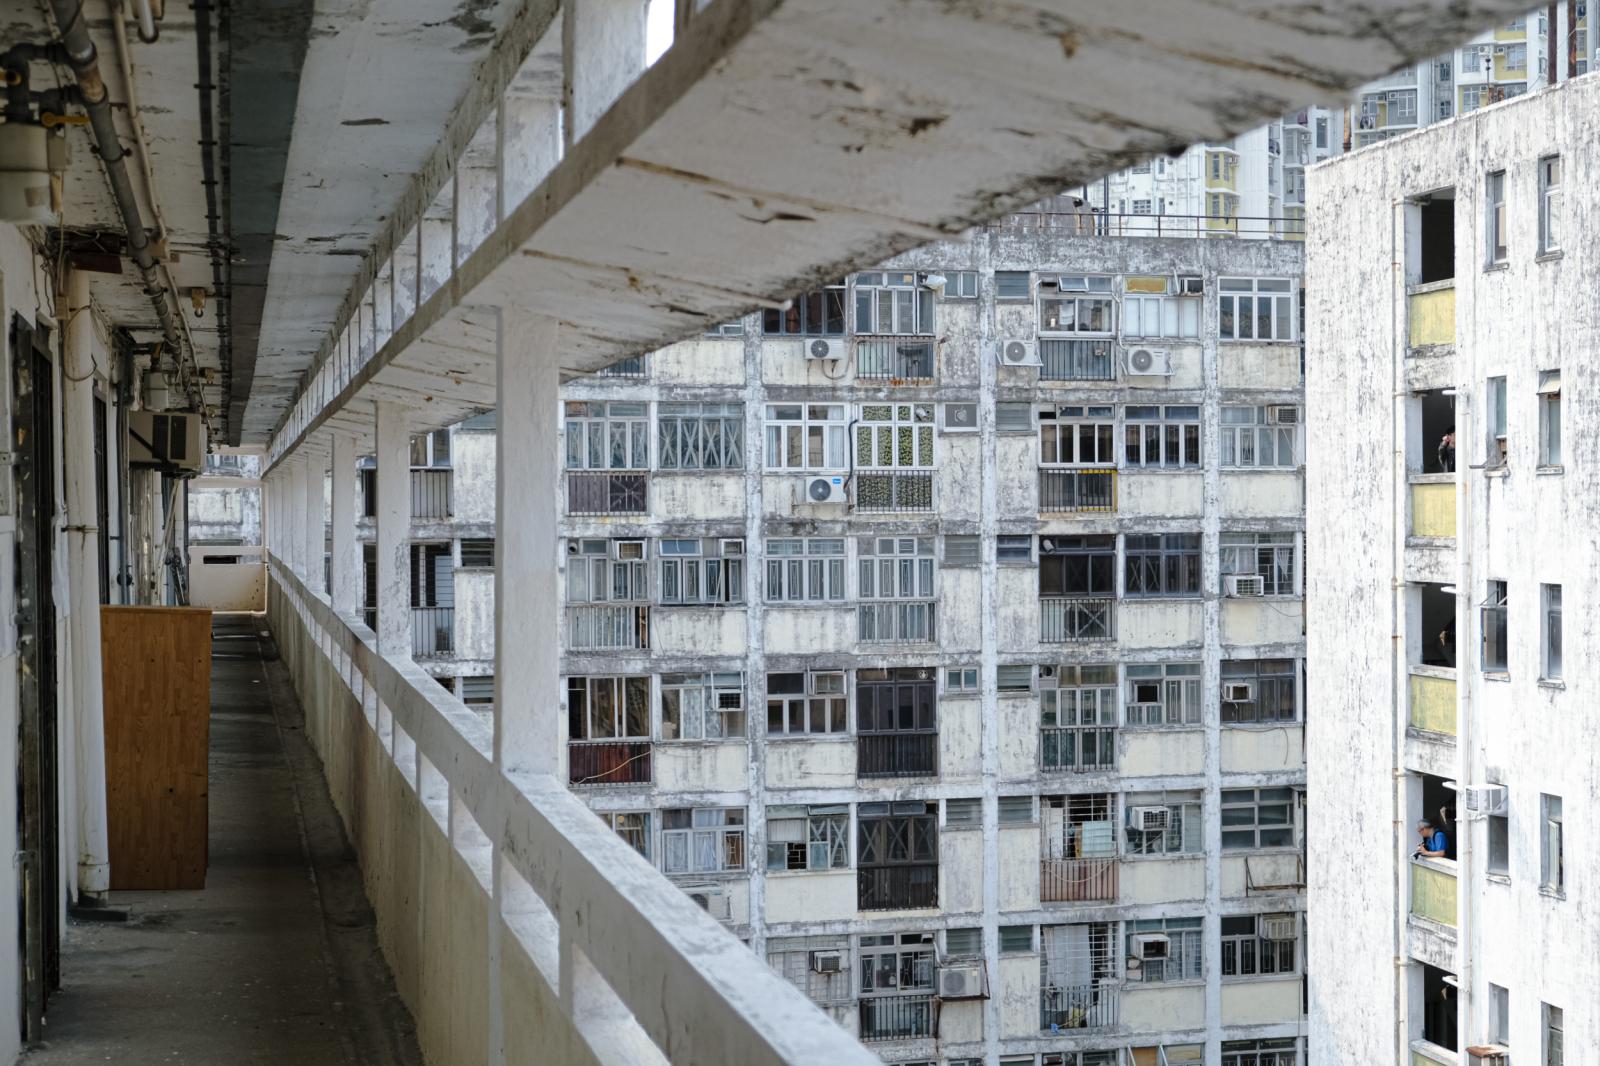 Demolition of Tai Hang Sai